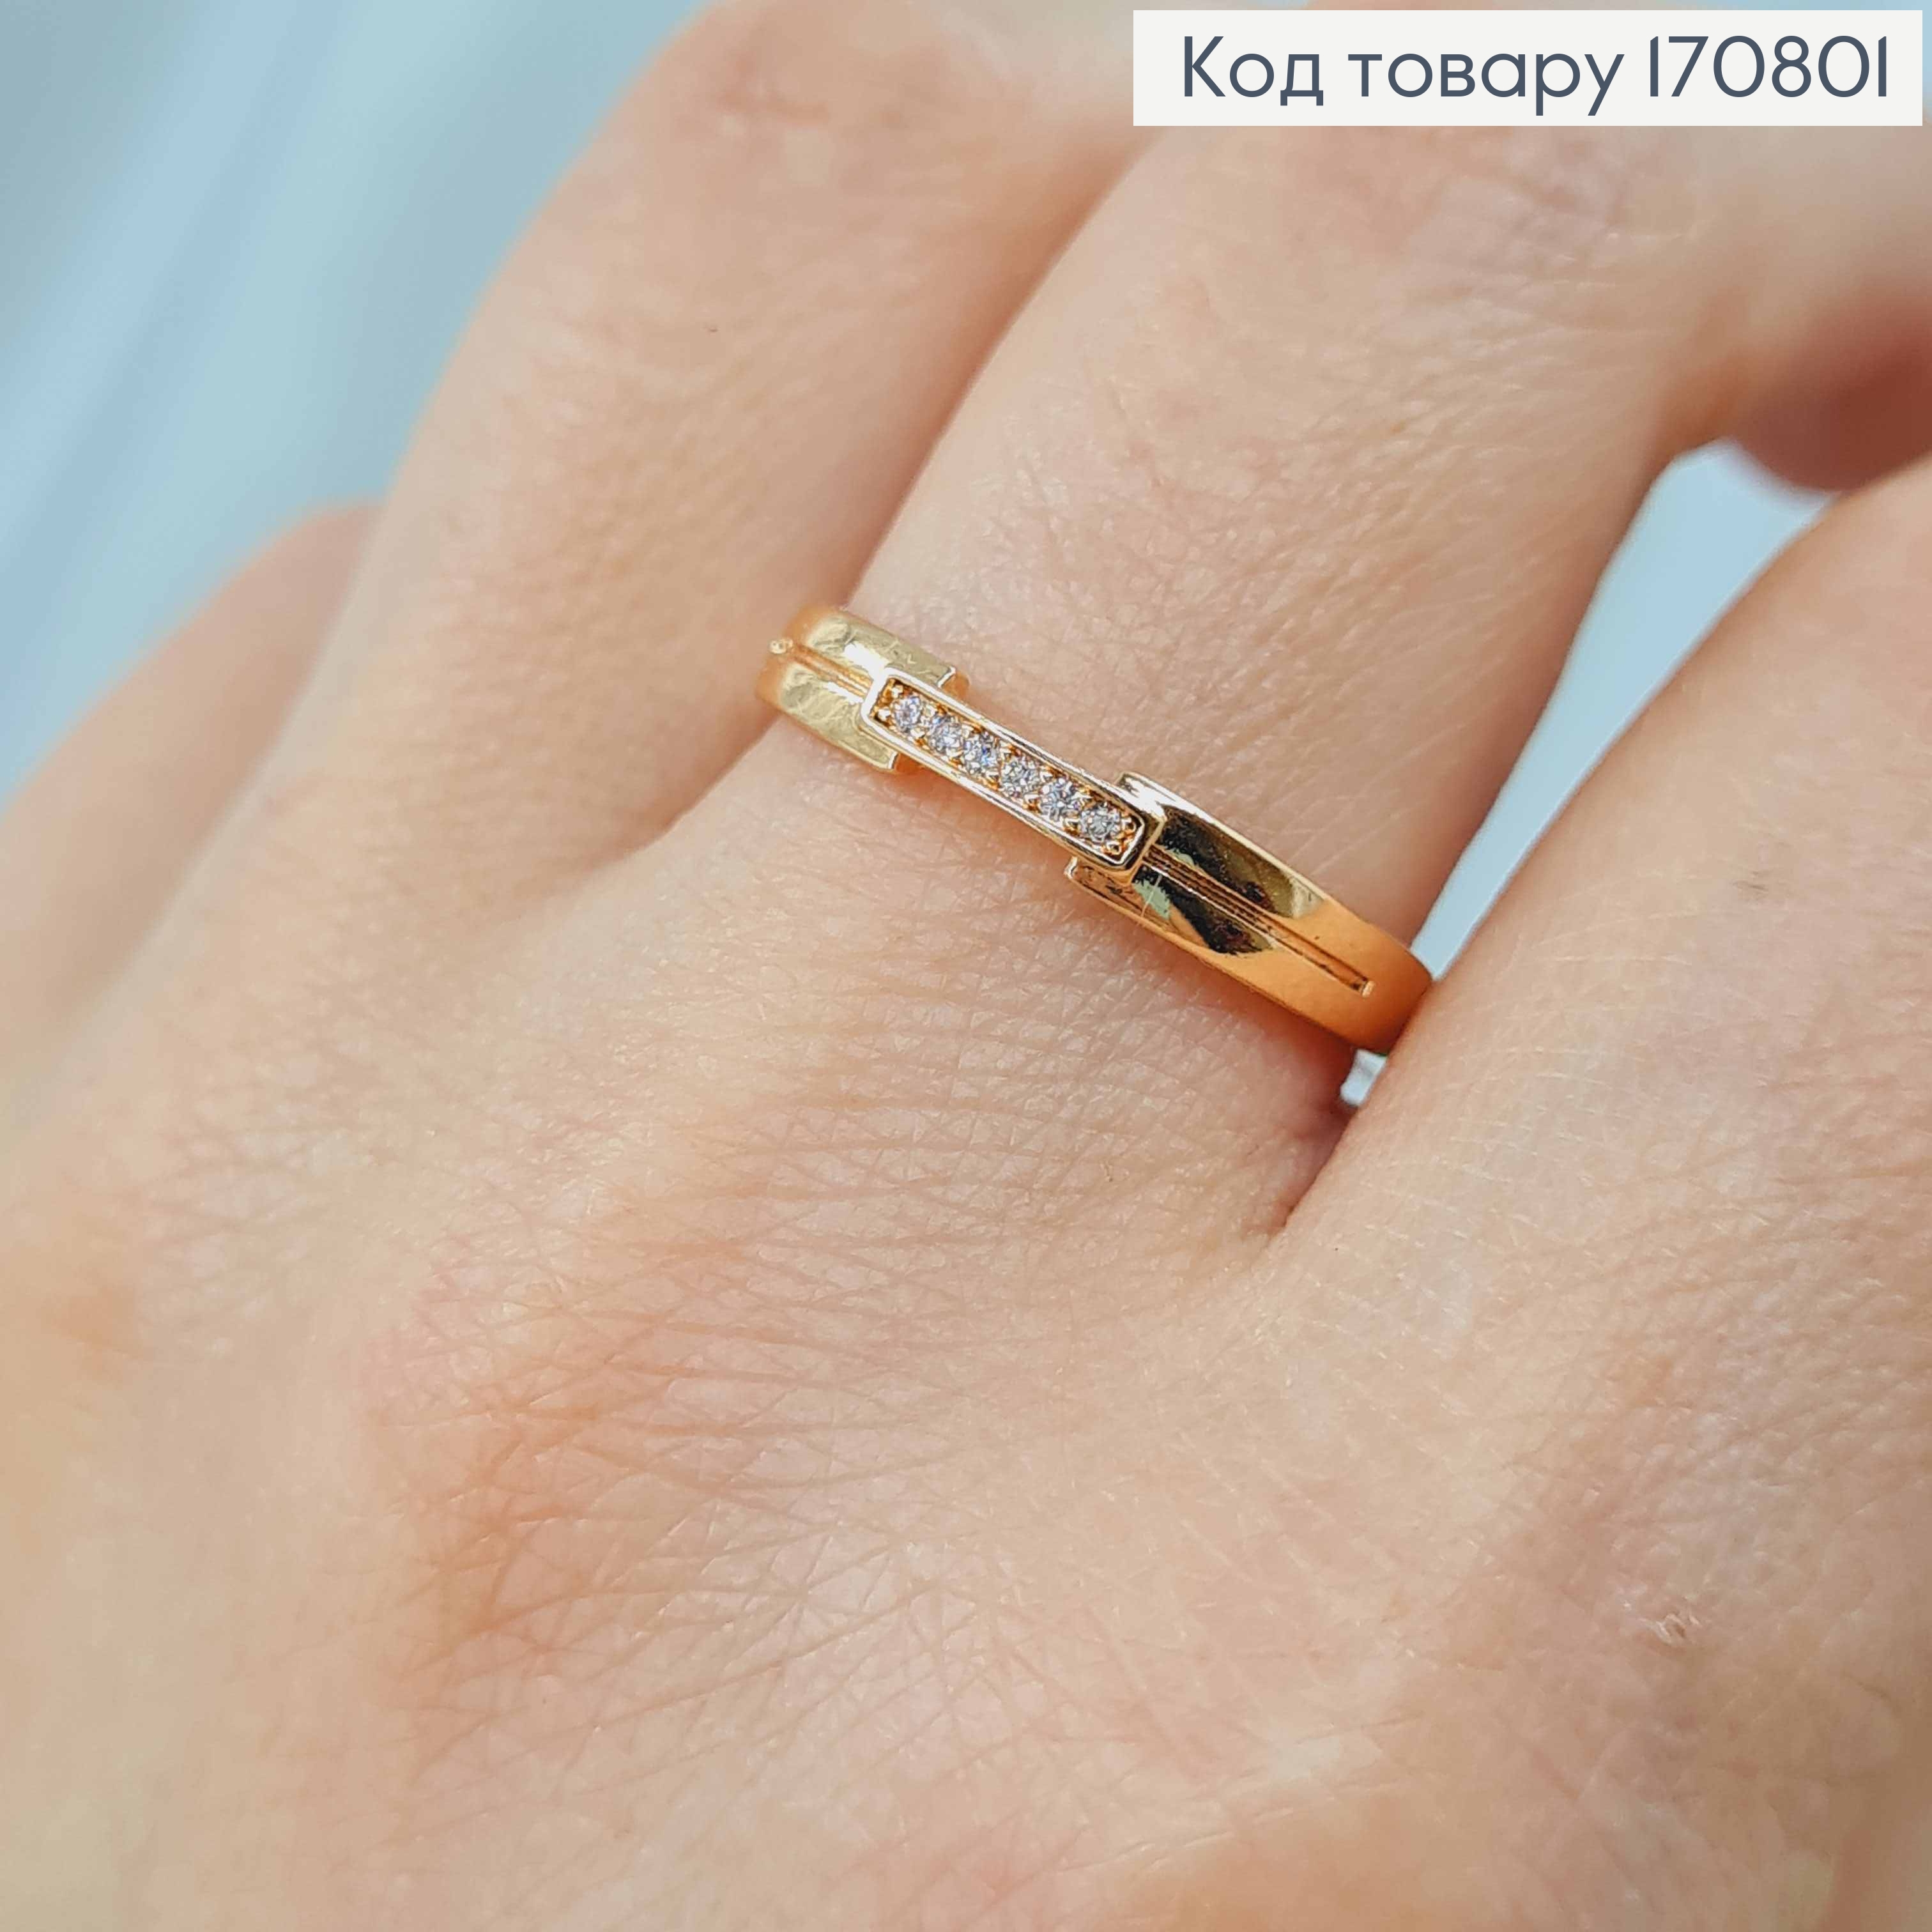 Кольцо "Флоу" с линией камней, Xuping 18K 170801 фото 2